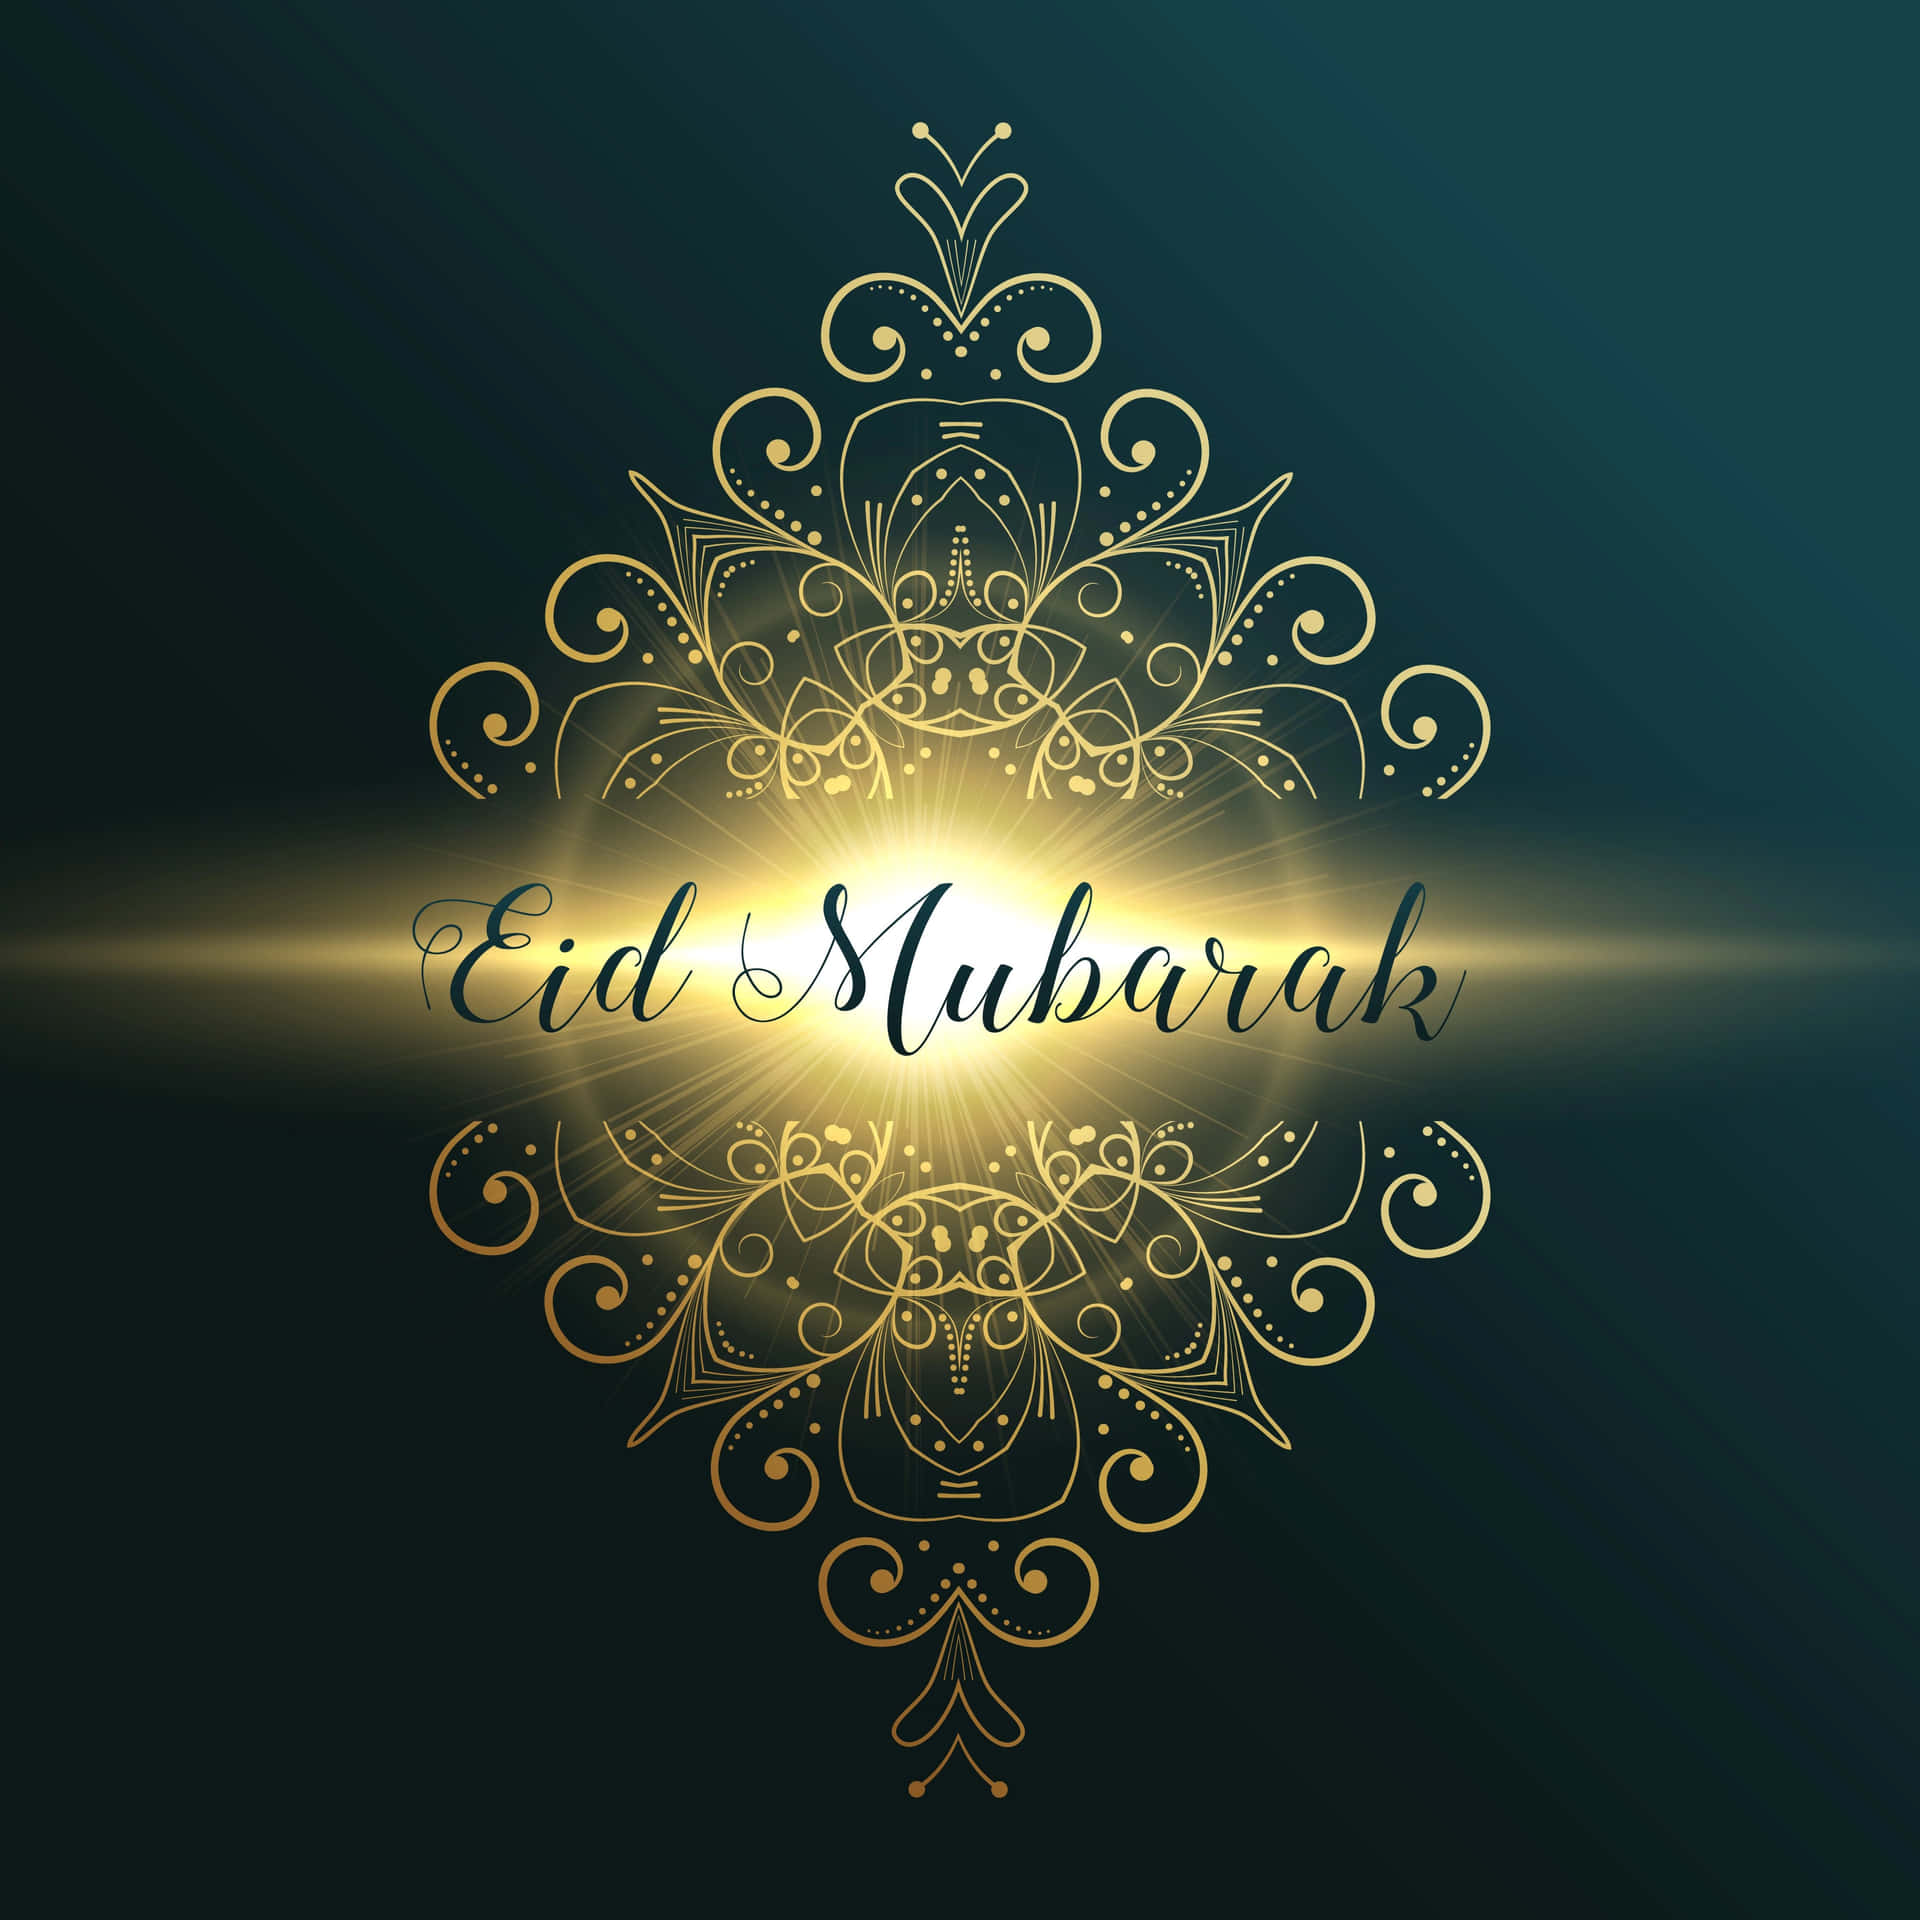 Attfira Eid - Den Glädjefyllda Högtiden